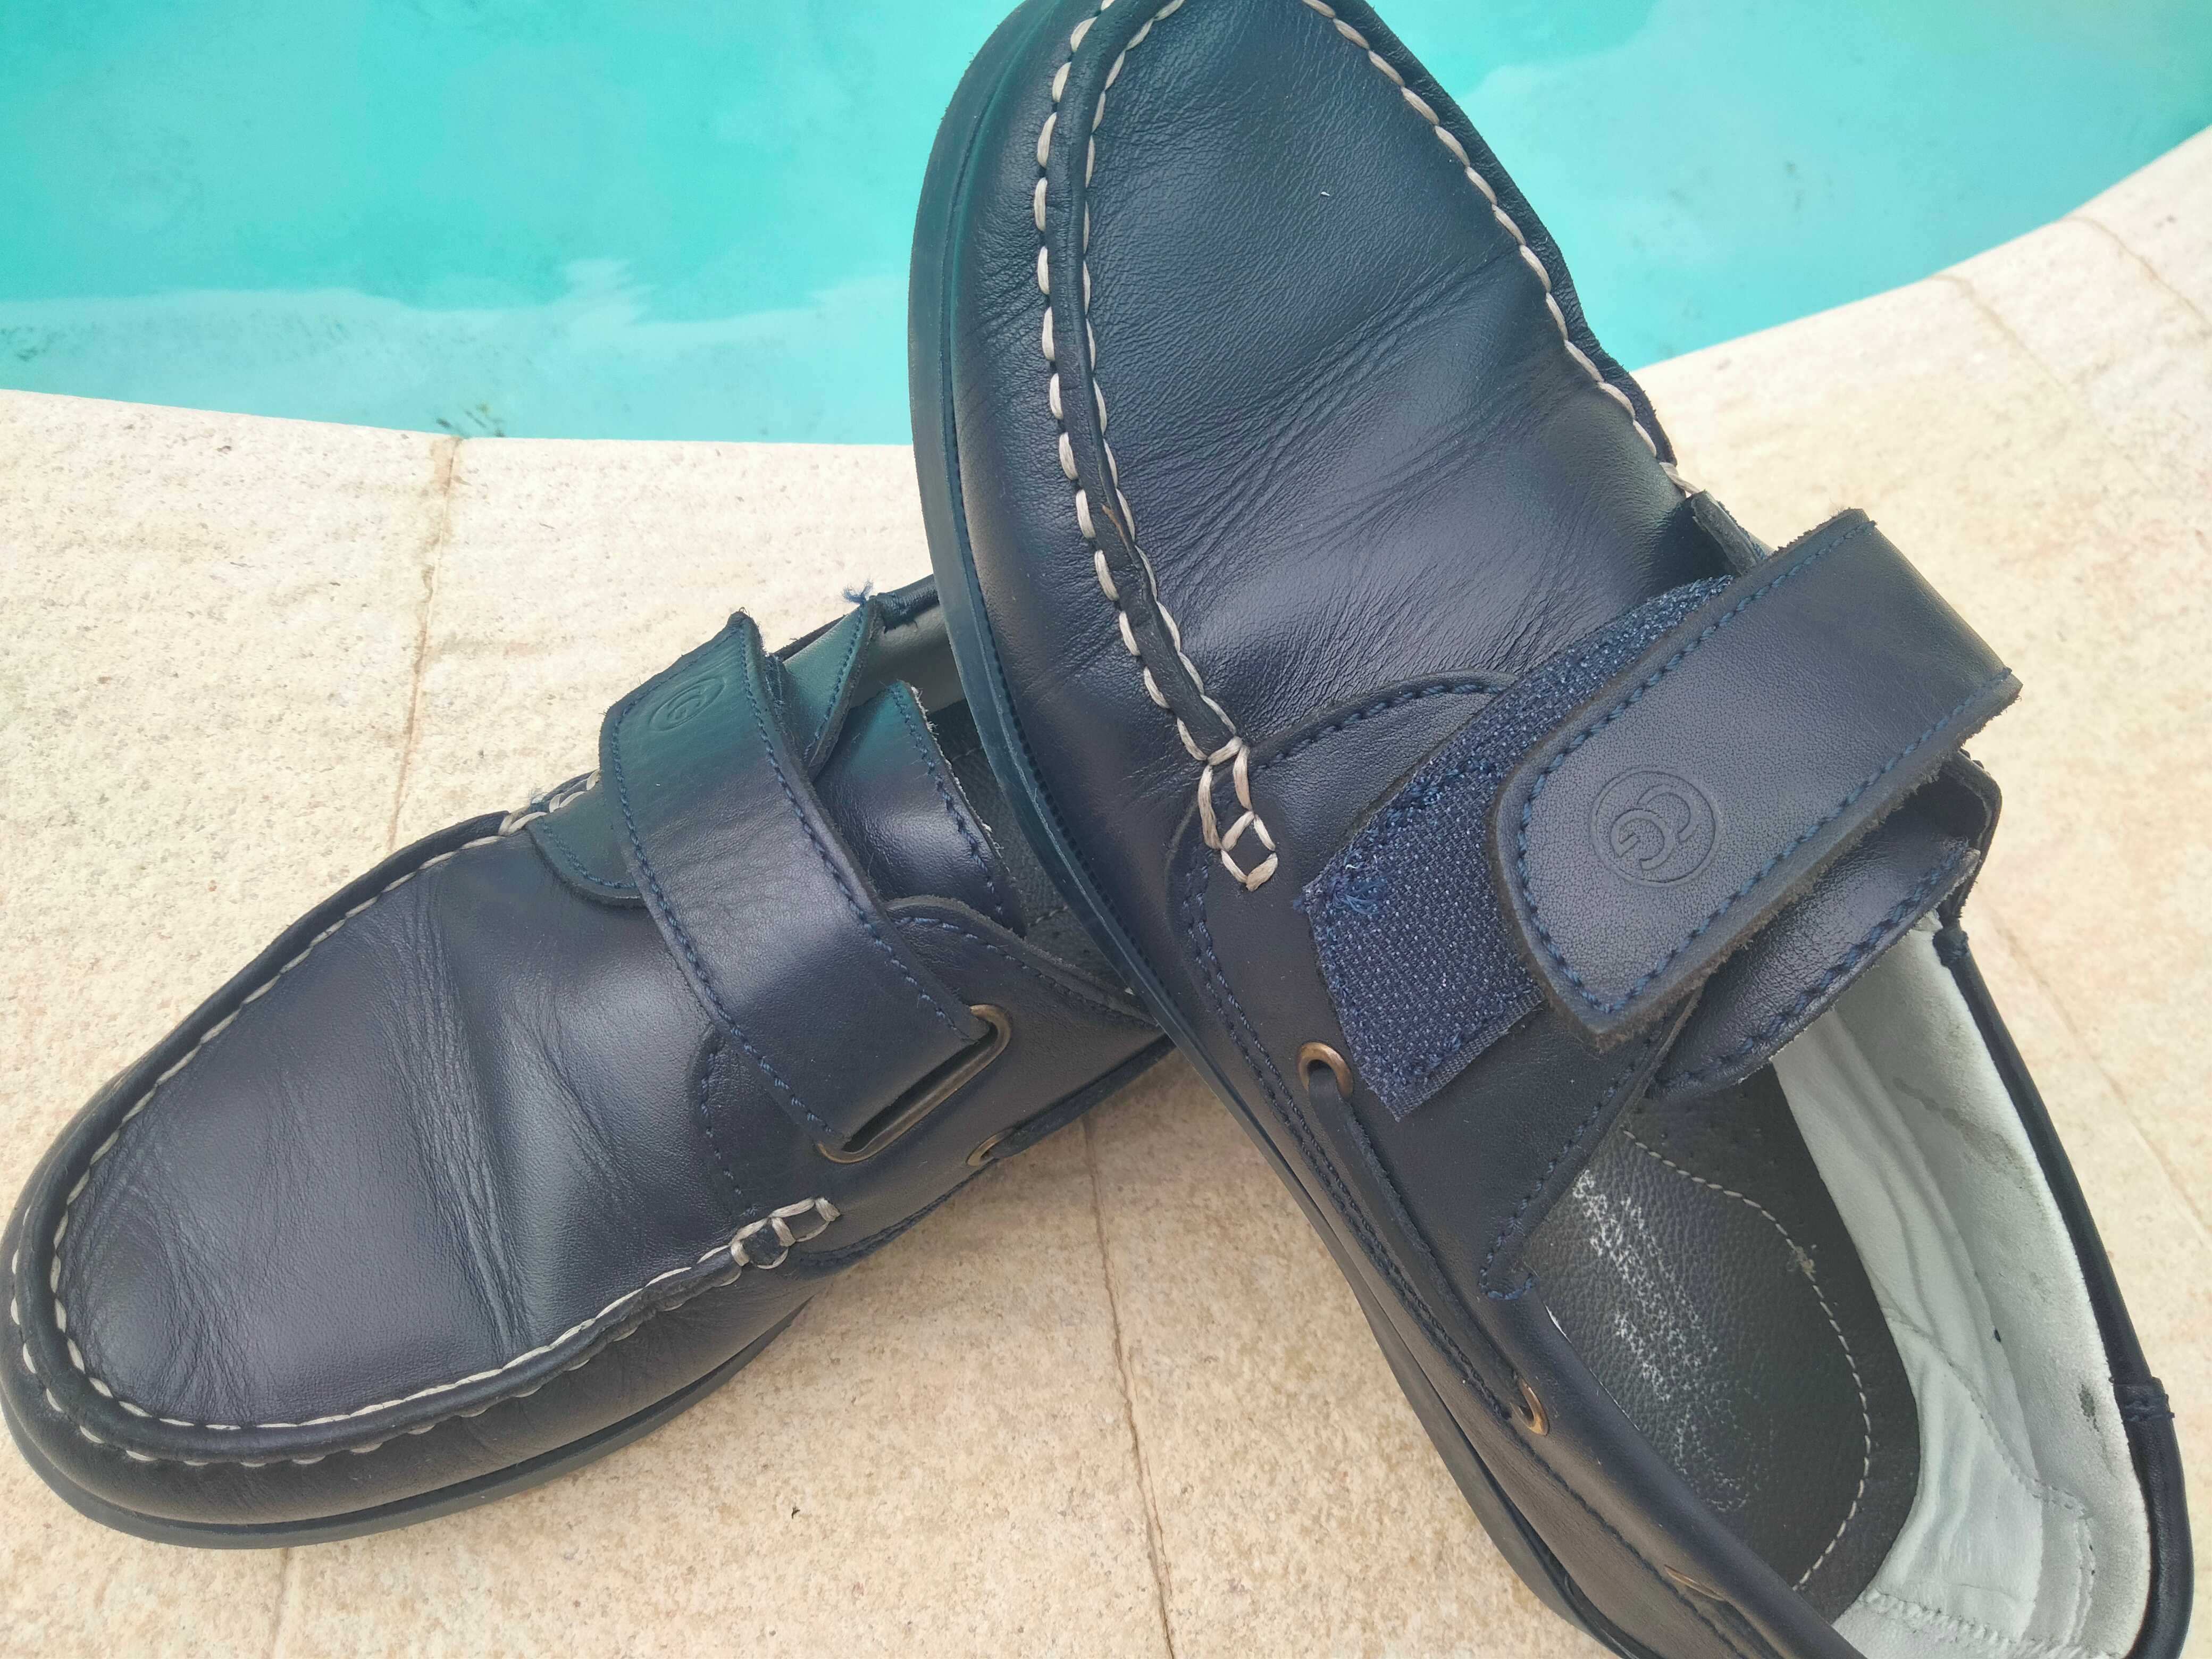 Moncassins/Sapato Vela 38 masculino